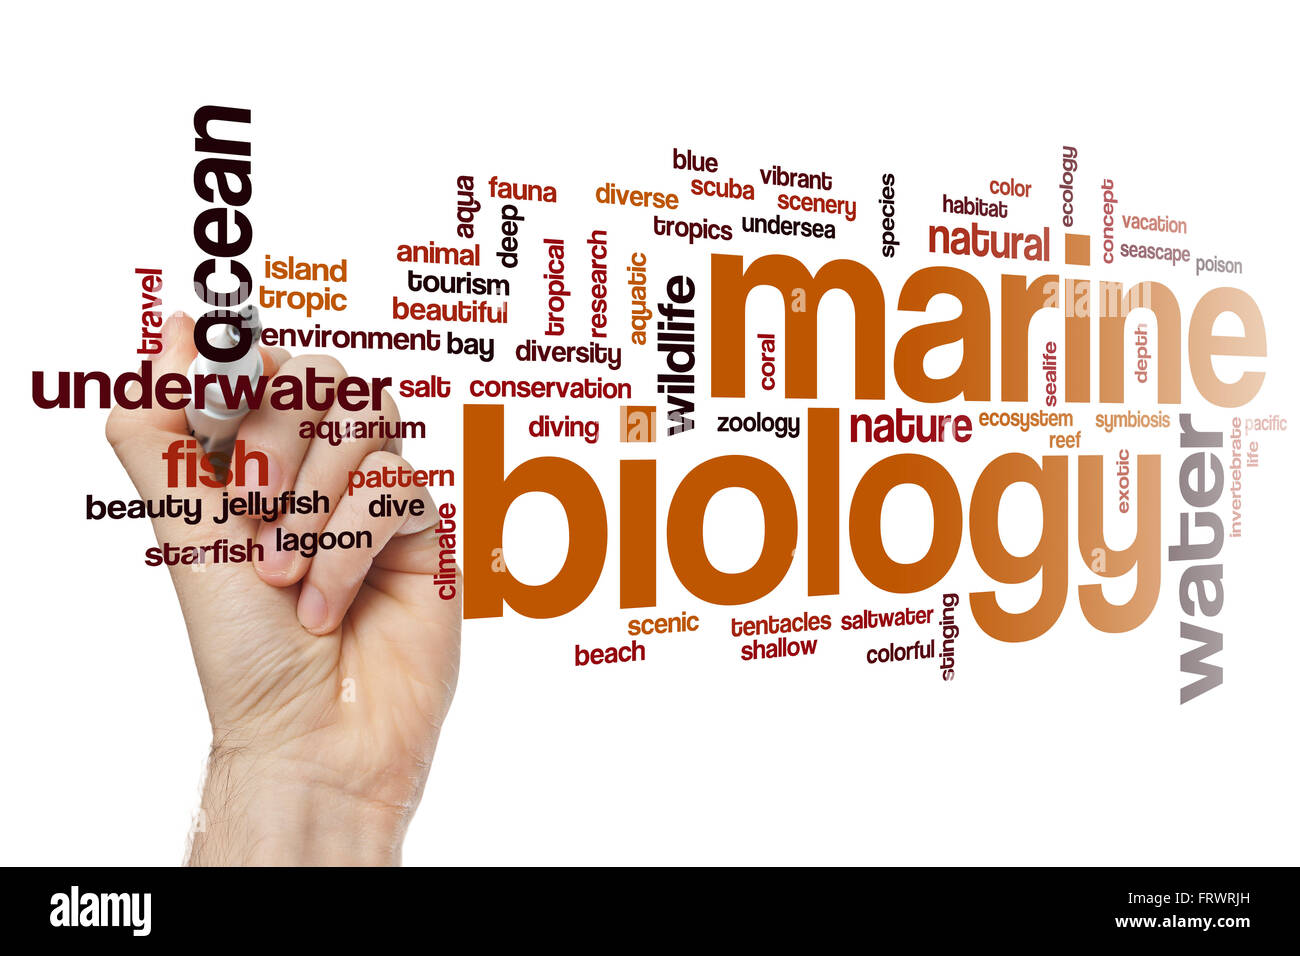 Meeresbiologie-Wort-Cloud-Konzept Stockfoto